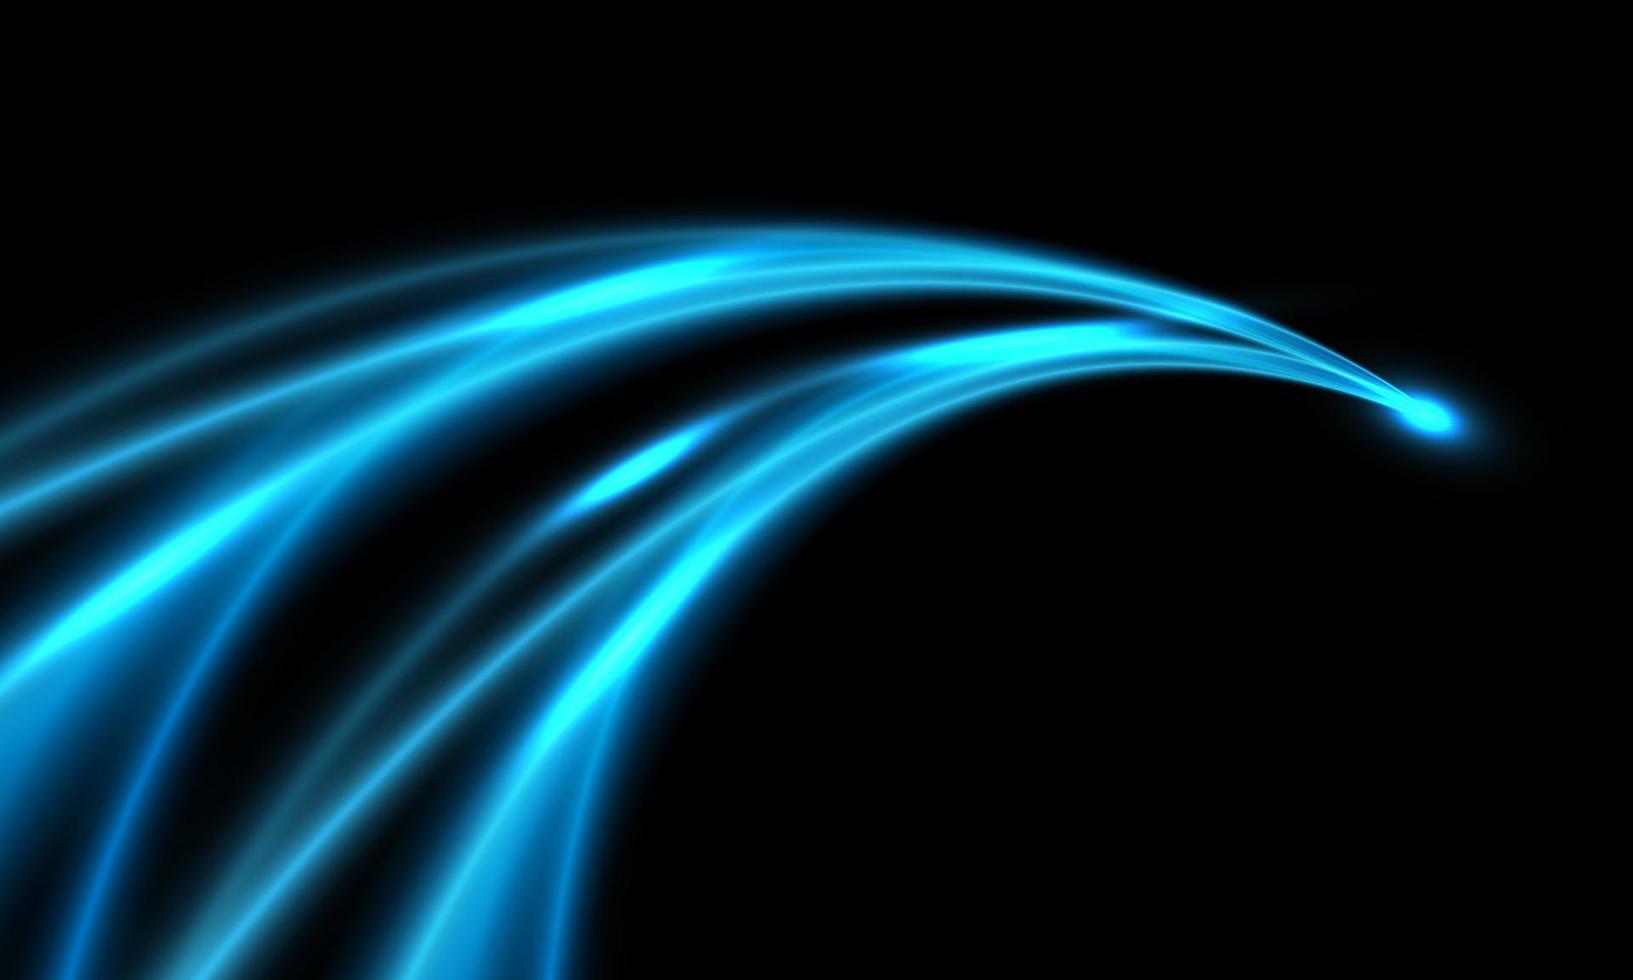 velocidad de curva de luz azul abstracta en vector de fondo de tecnología futurista moderna de diseño negro